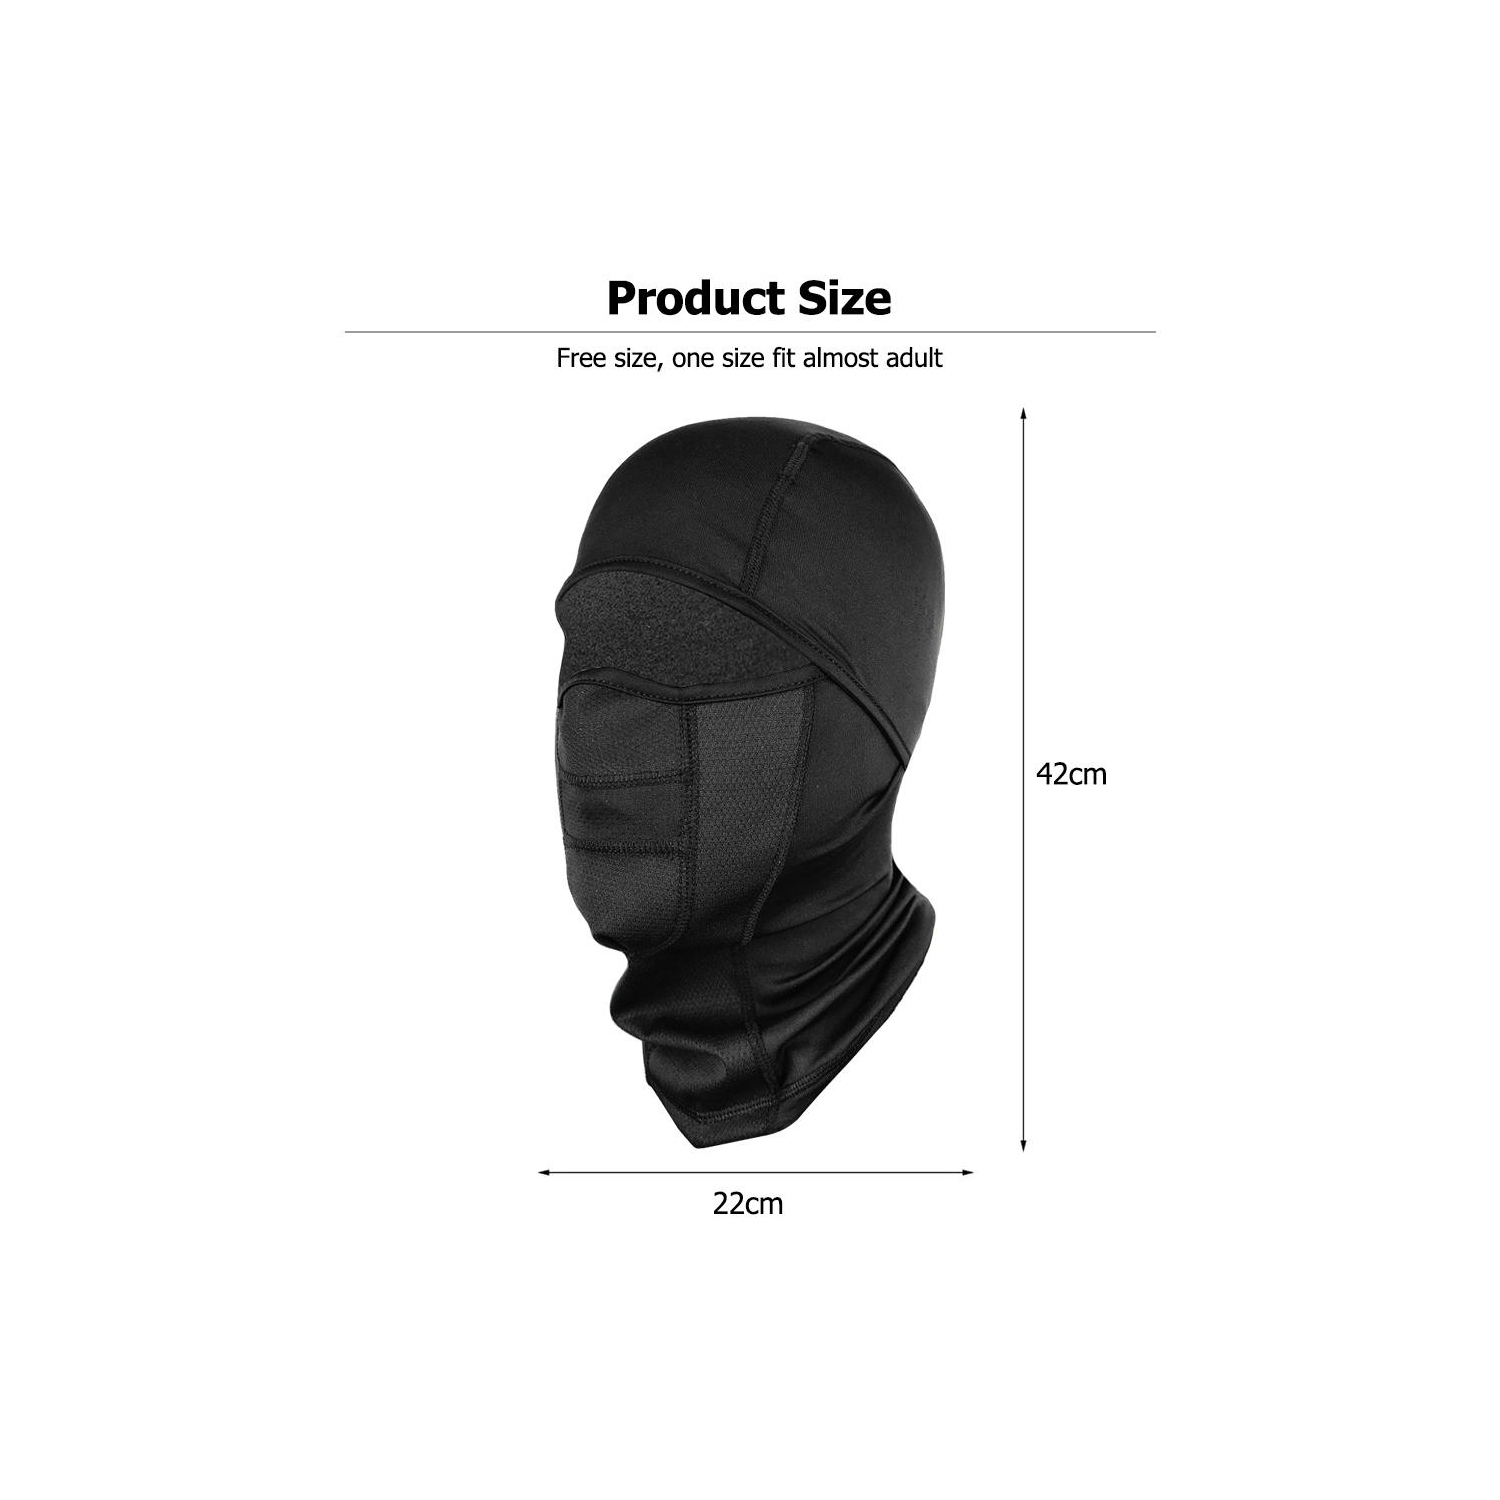 Hiver Outdoor Riding Mask Épaissie Coupe-vent Chaud Masque Polaire